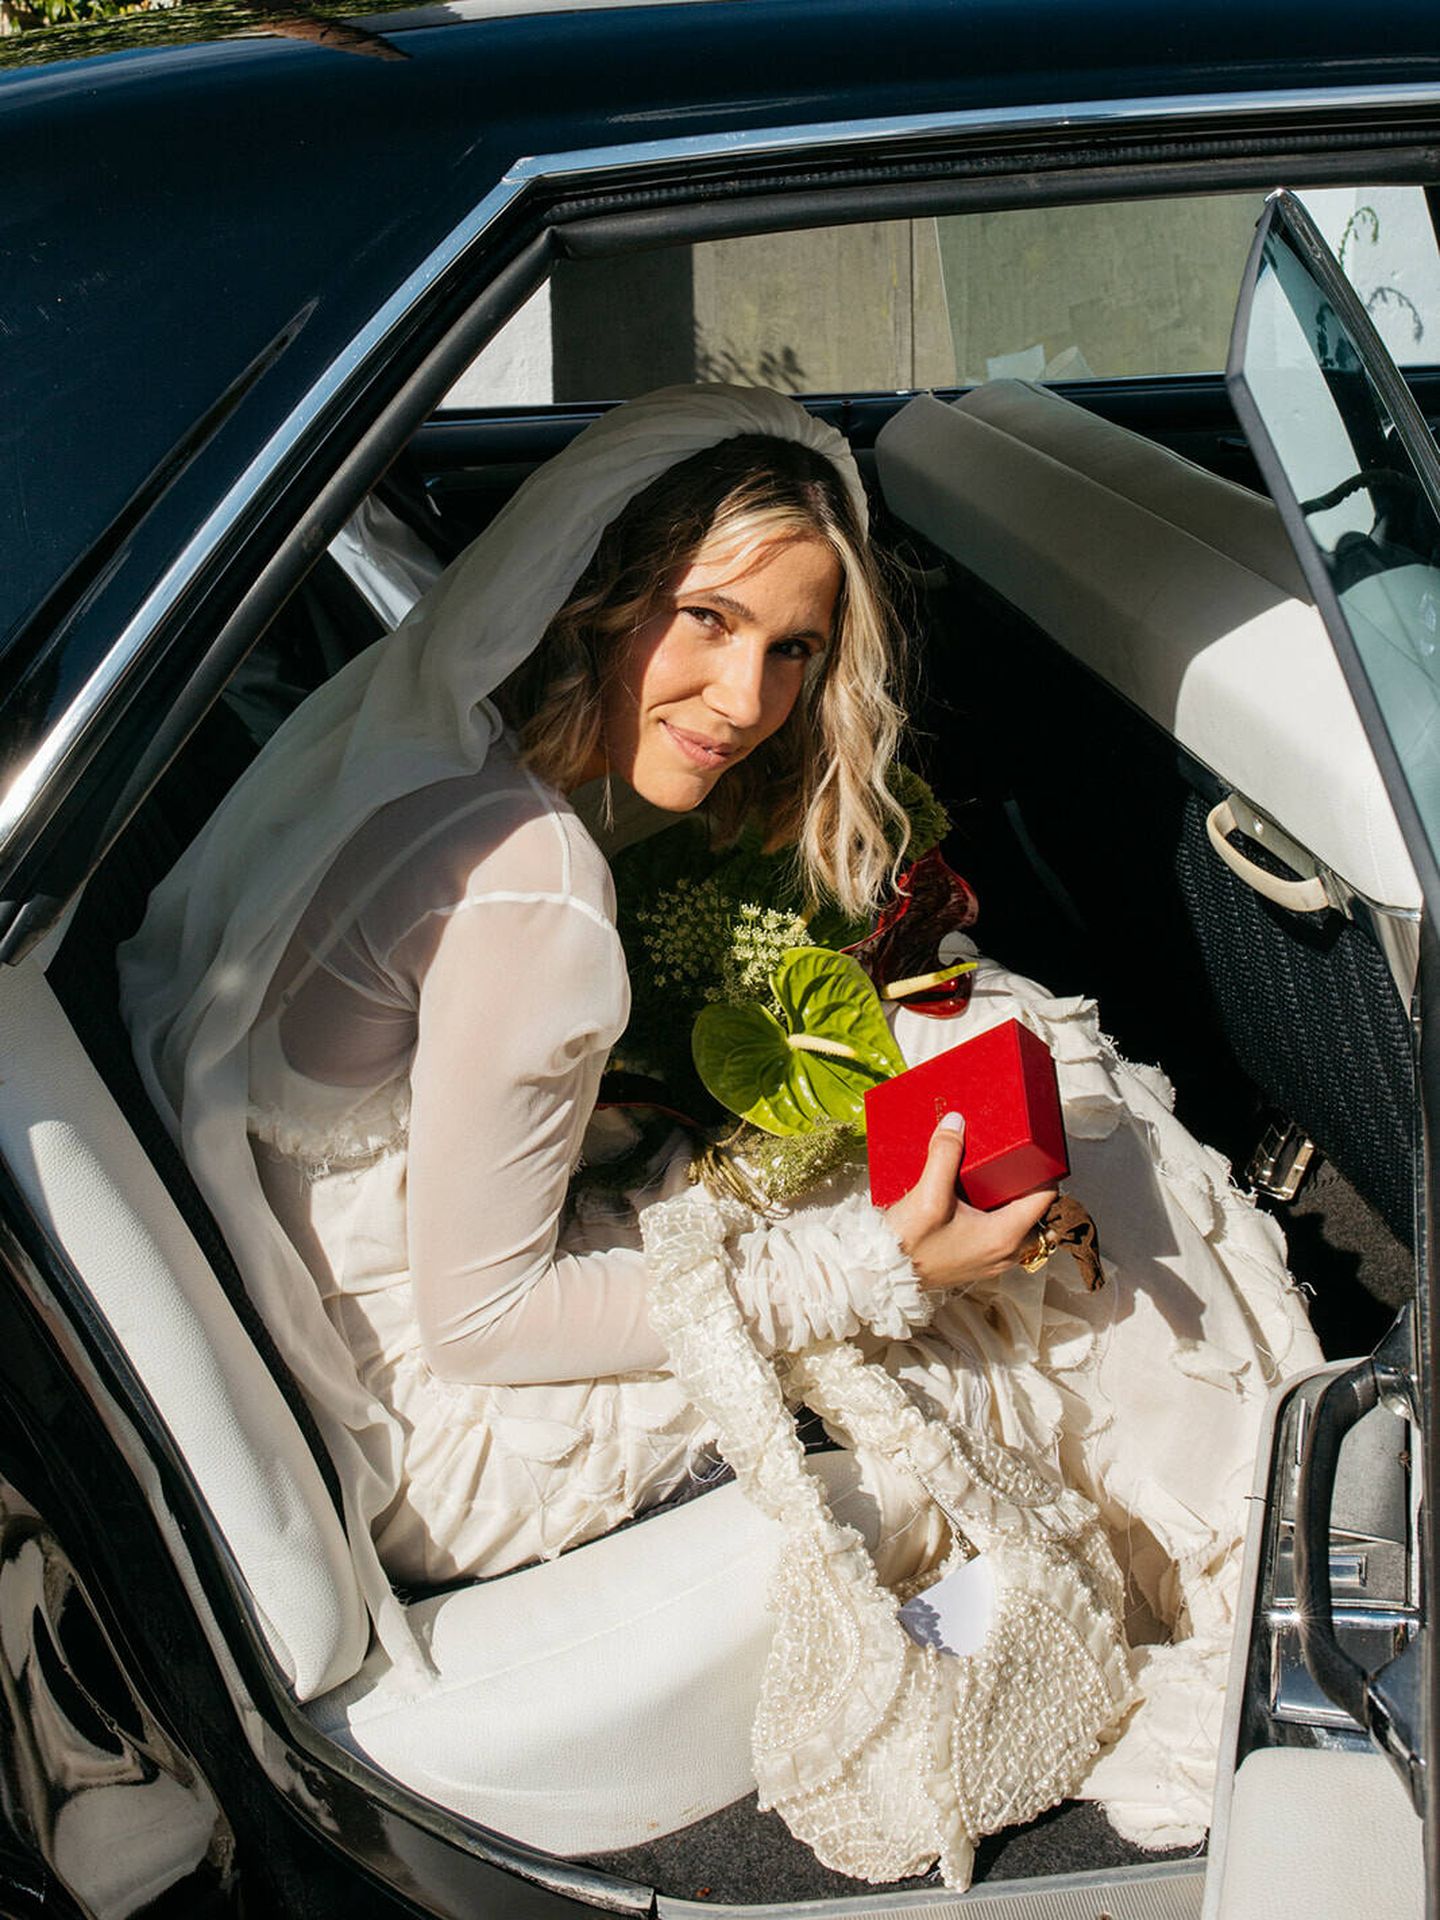 La boda de Adriana y su vestido de novia de Jacquemus. (Alejandra Ortiz Photo)